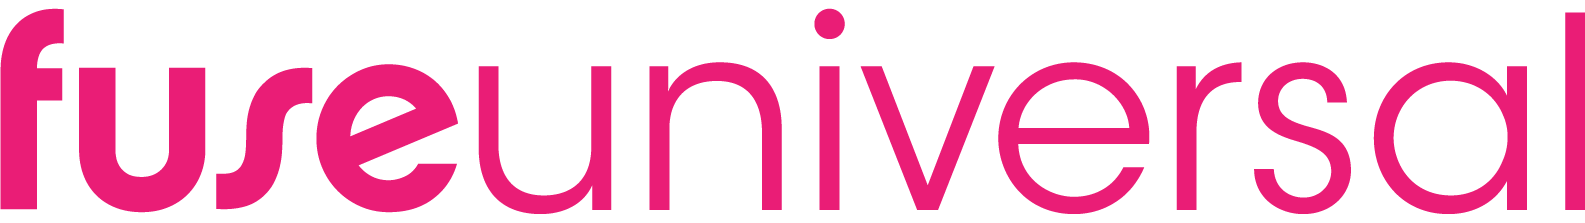 digital_flat-pink_horizontal_fuse_universal_logo